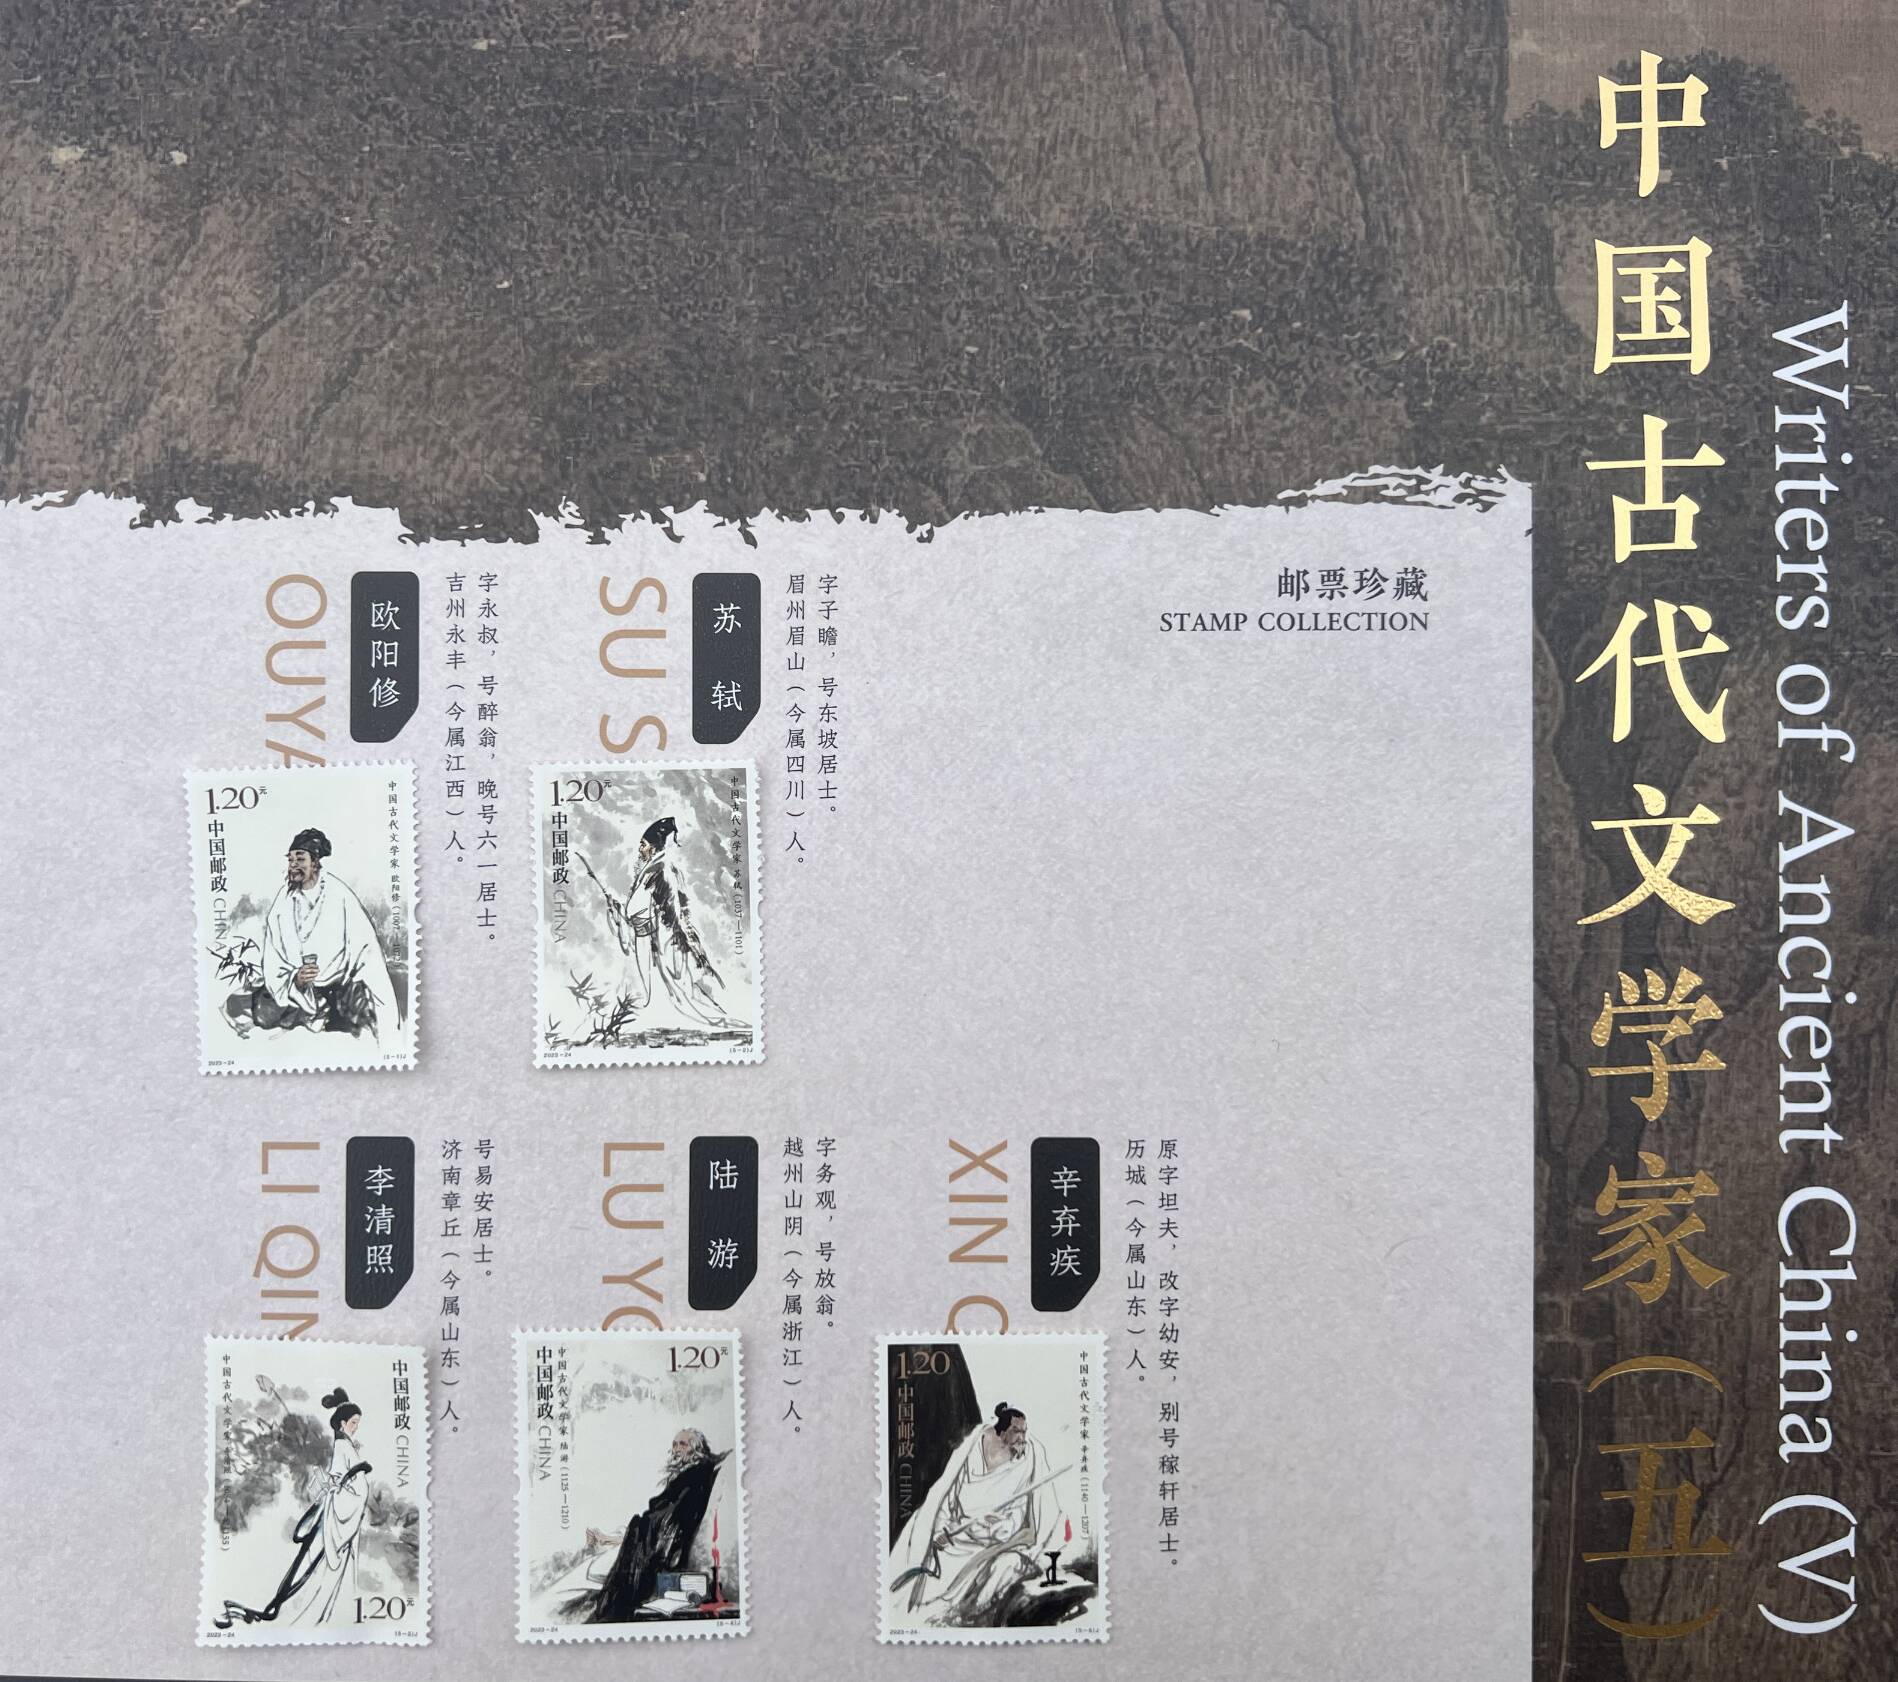 《中国古代文学家（五）》纪念邮票首发 图案包含李清照辛弃疾等